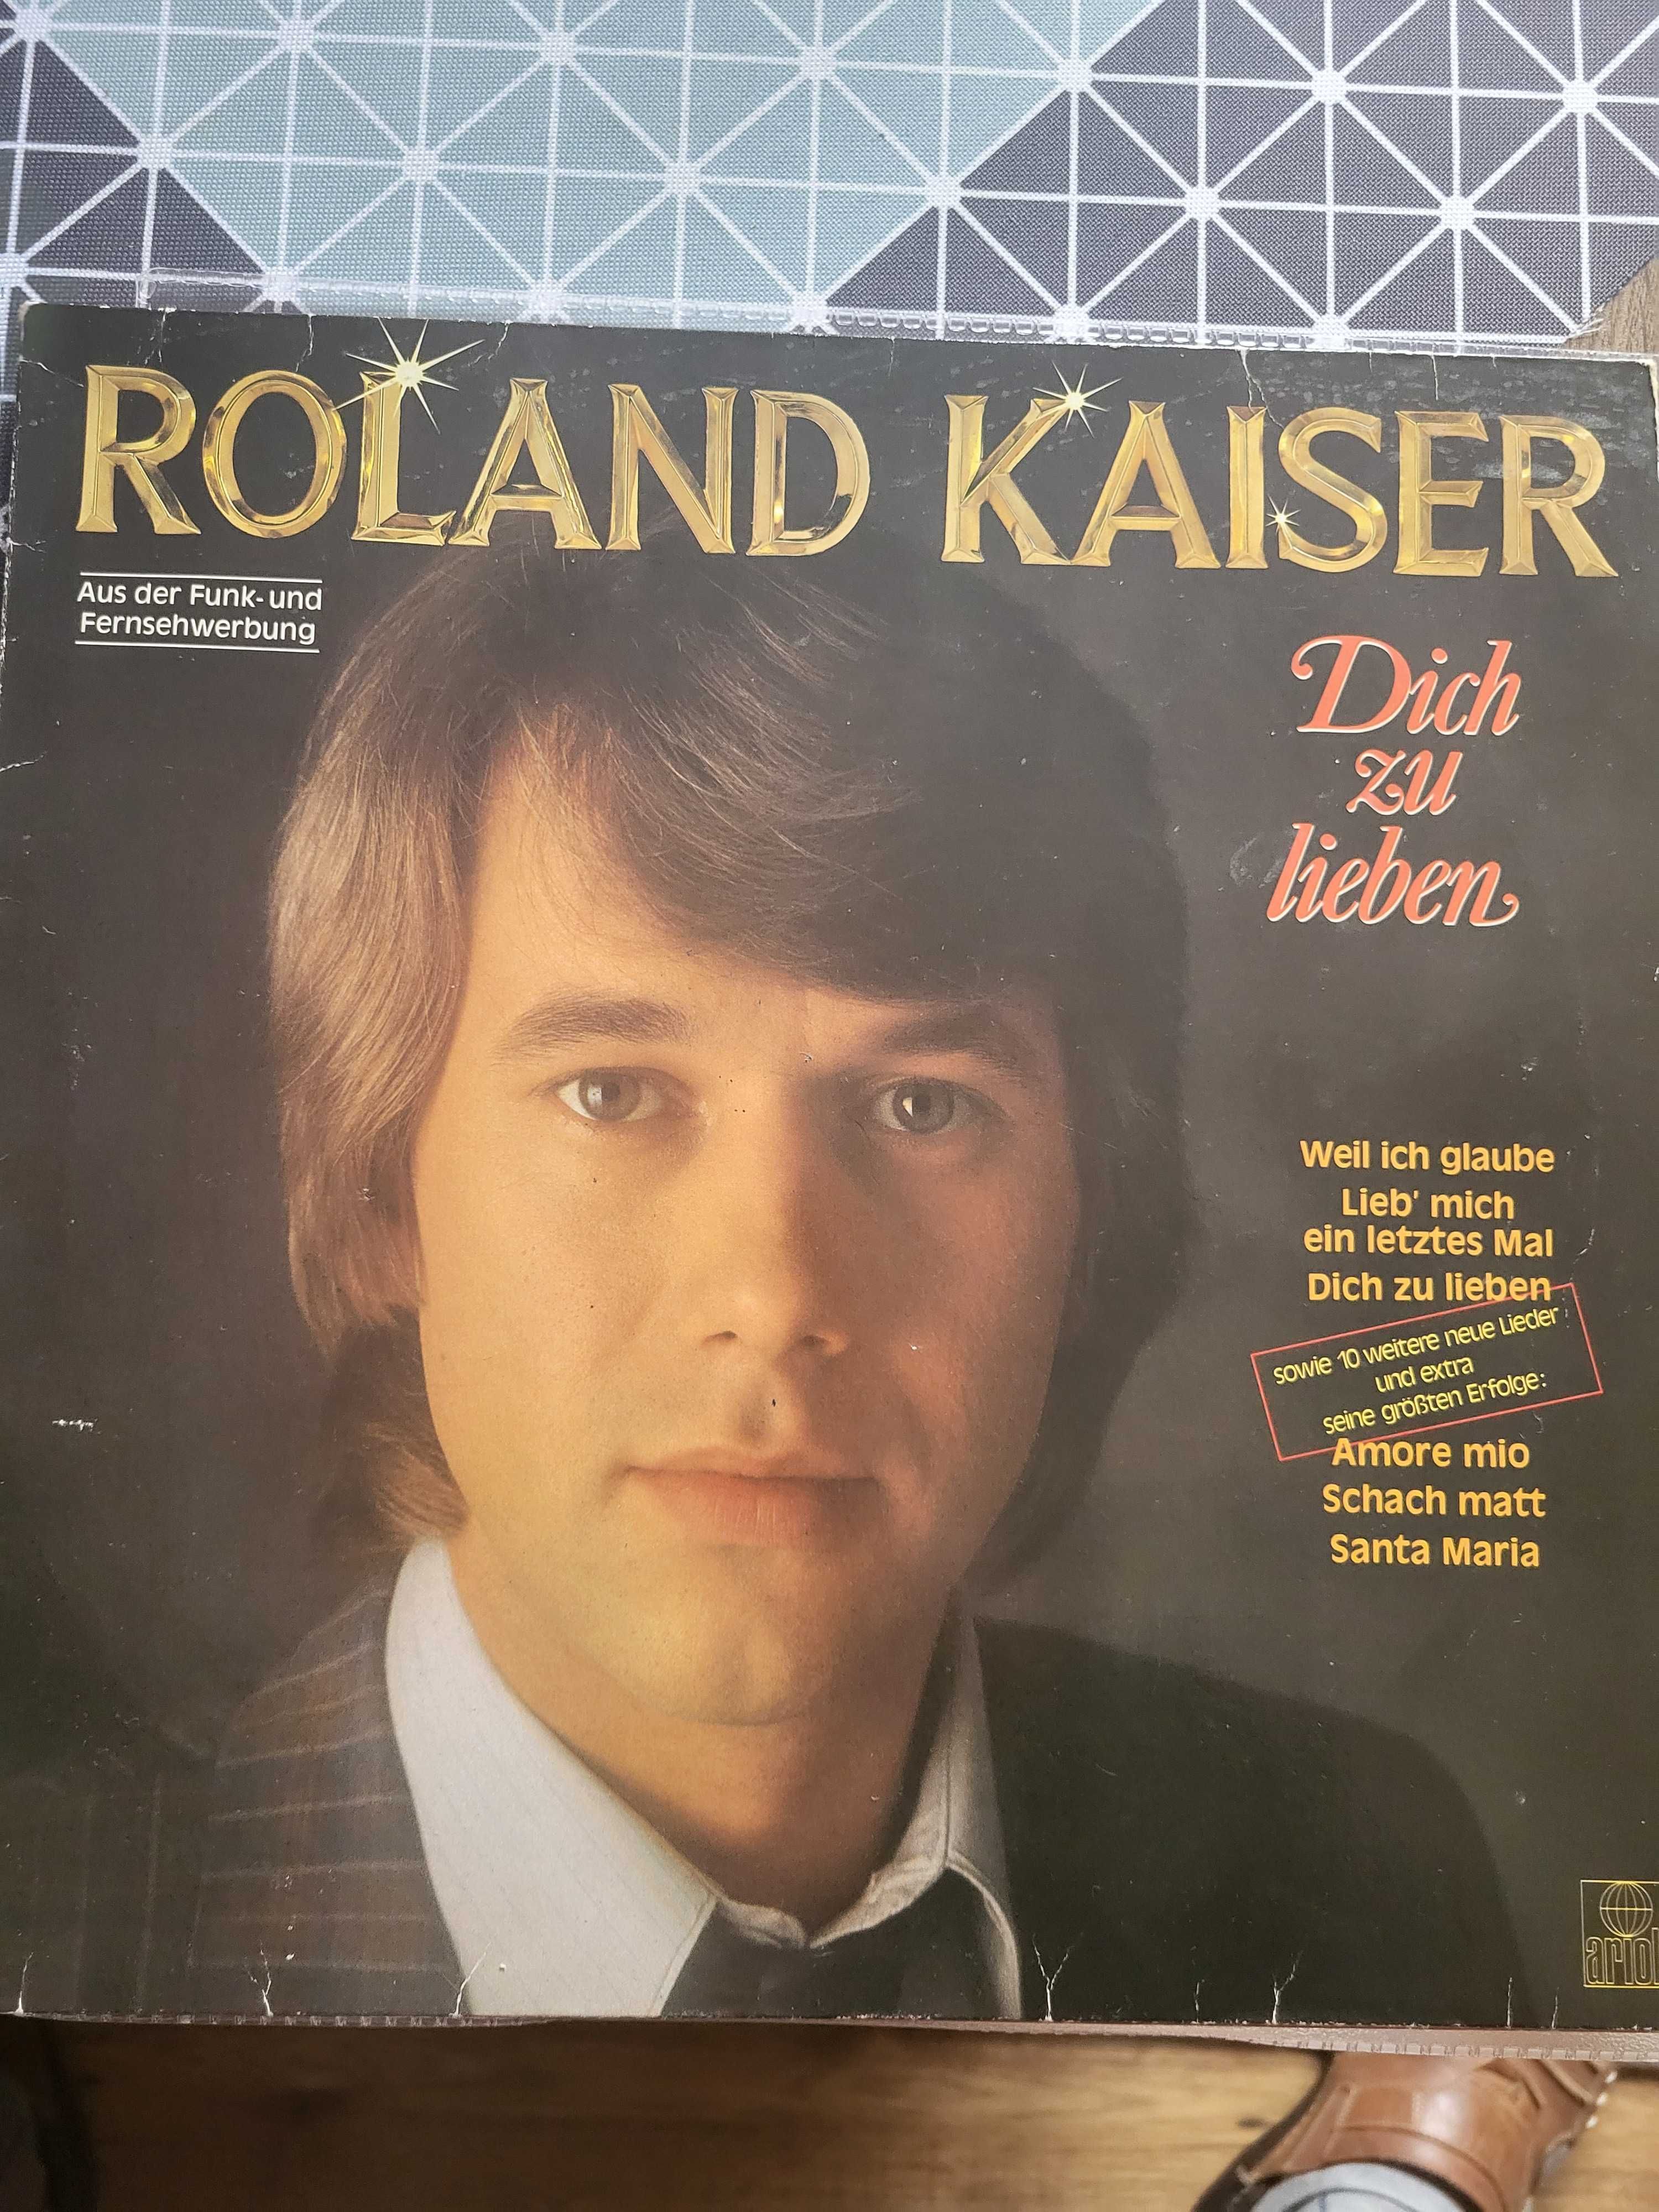 płyta vinylowa Roland Kaiser